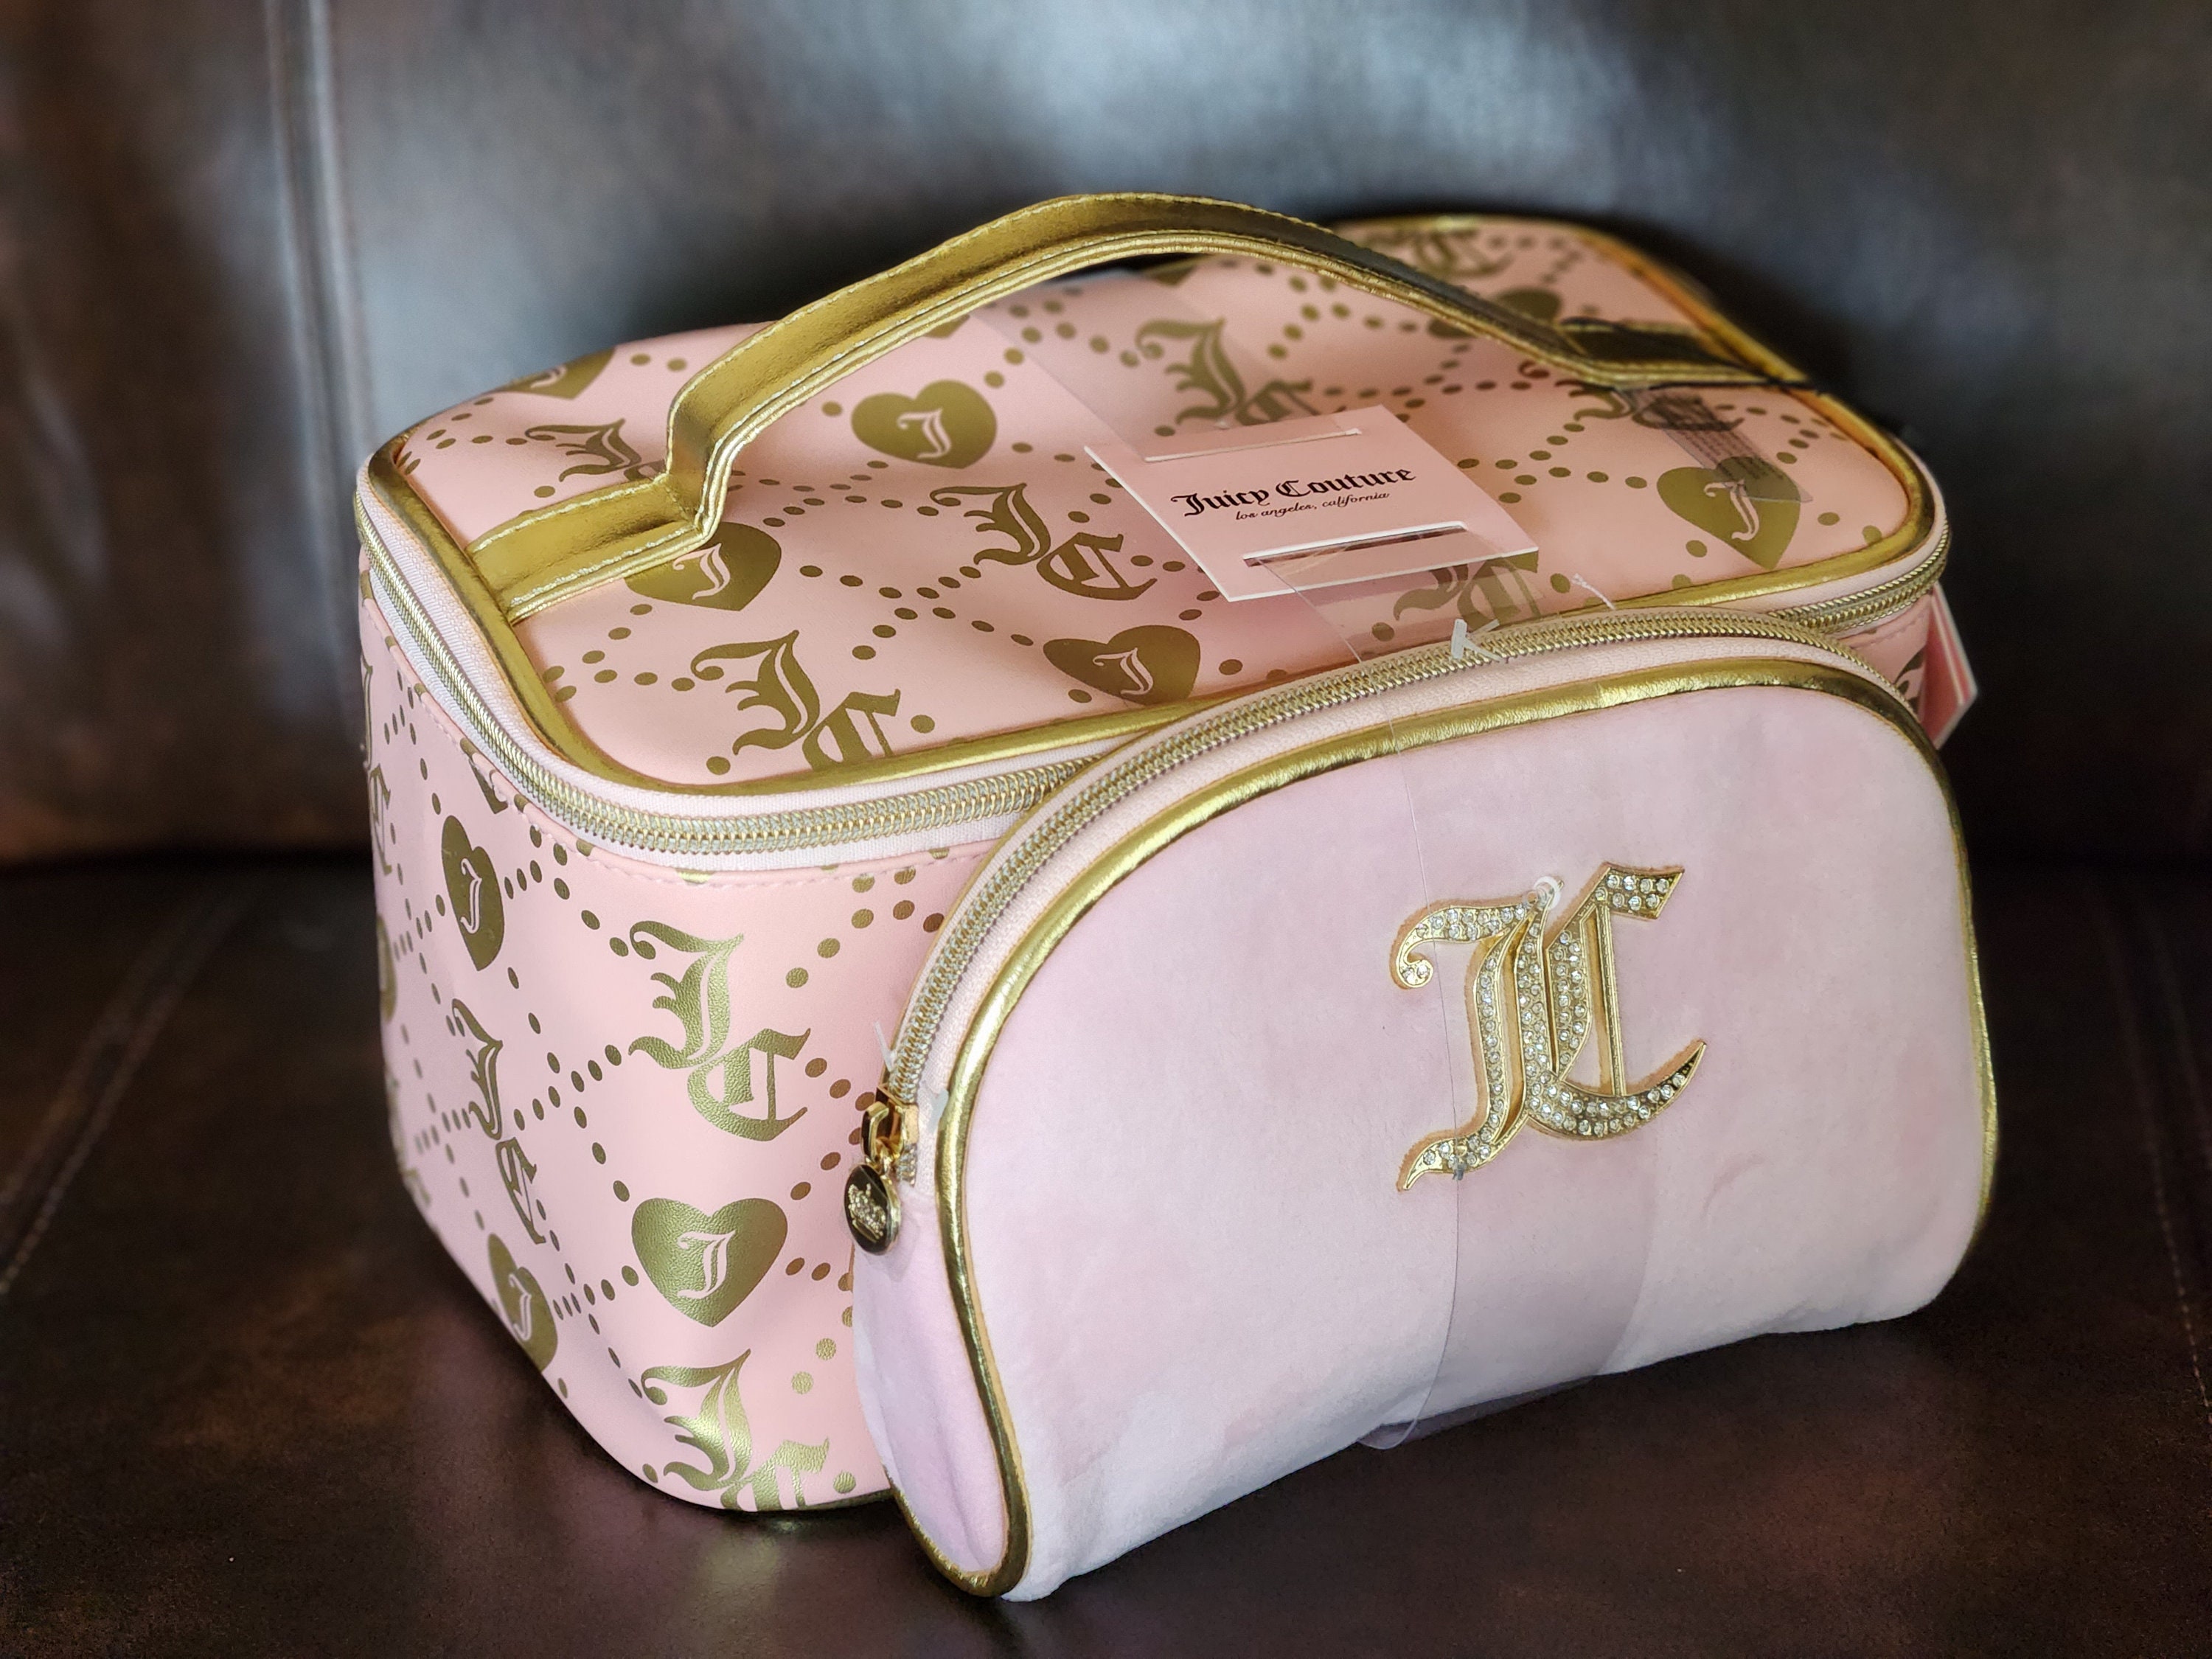 Pink Juicy Couture Weekender Duffle Bag